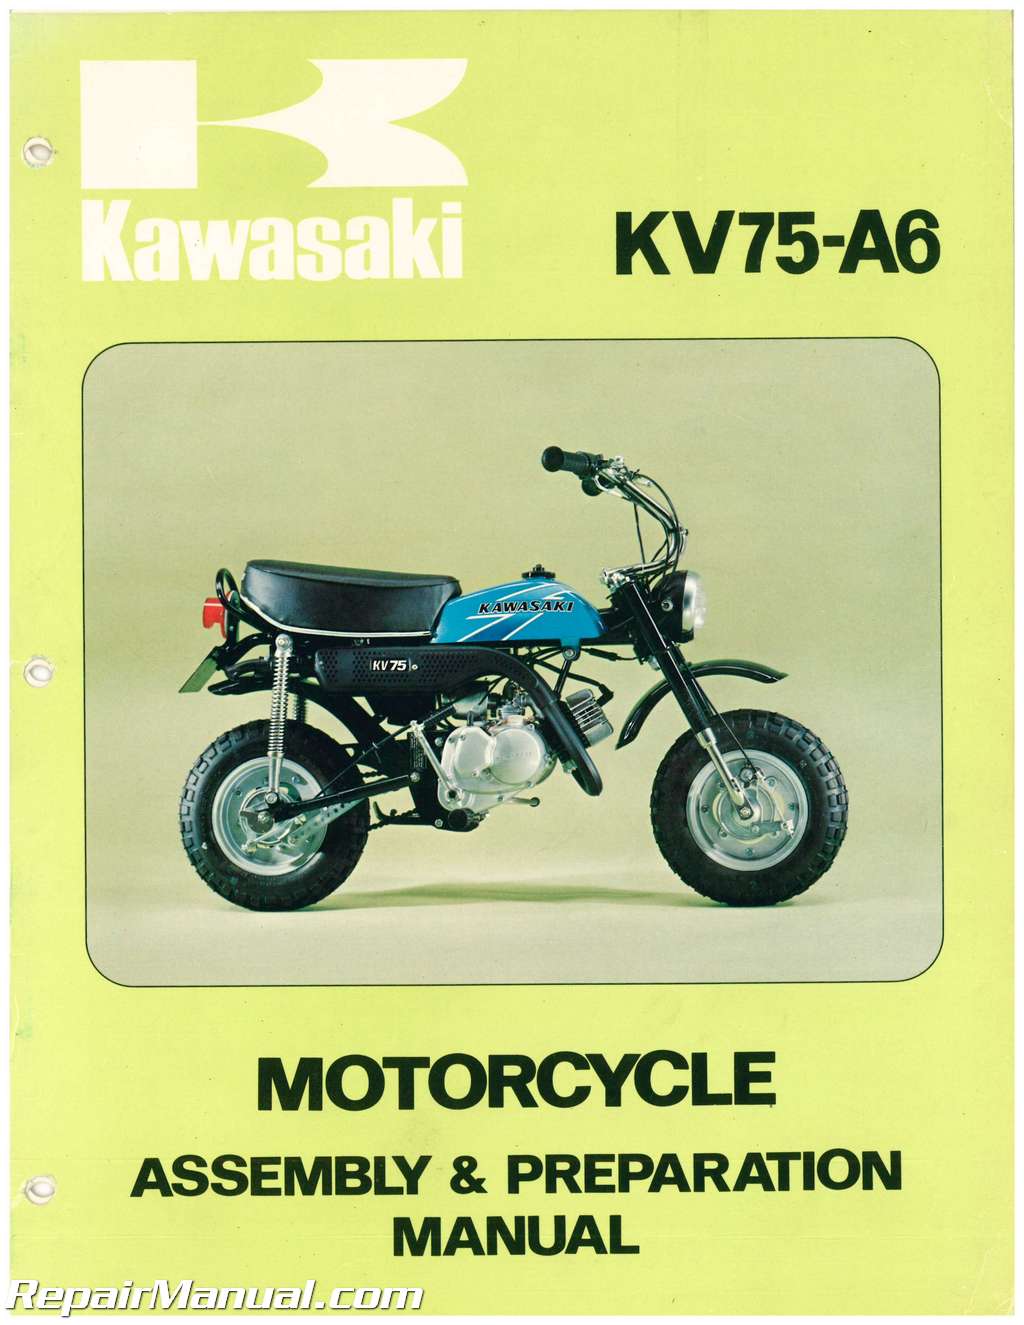 1977 Kawasaki KV75-A6 Motorcycle Assembly Preparation